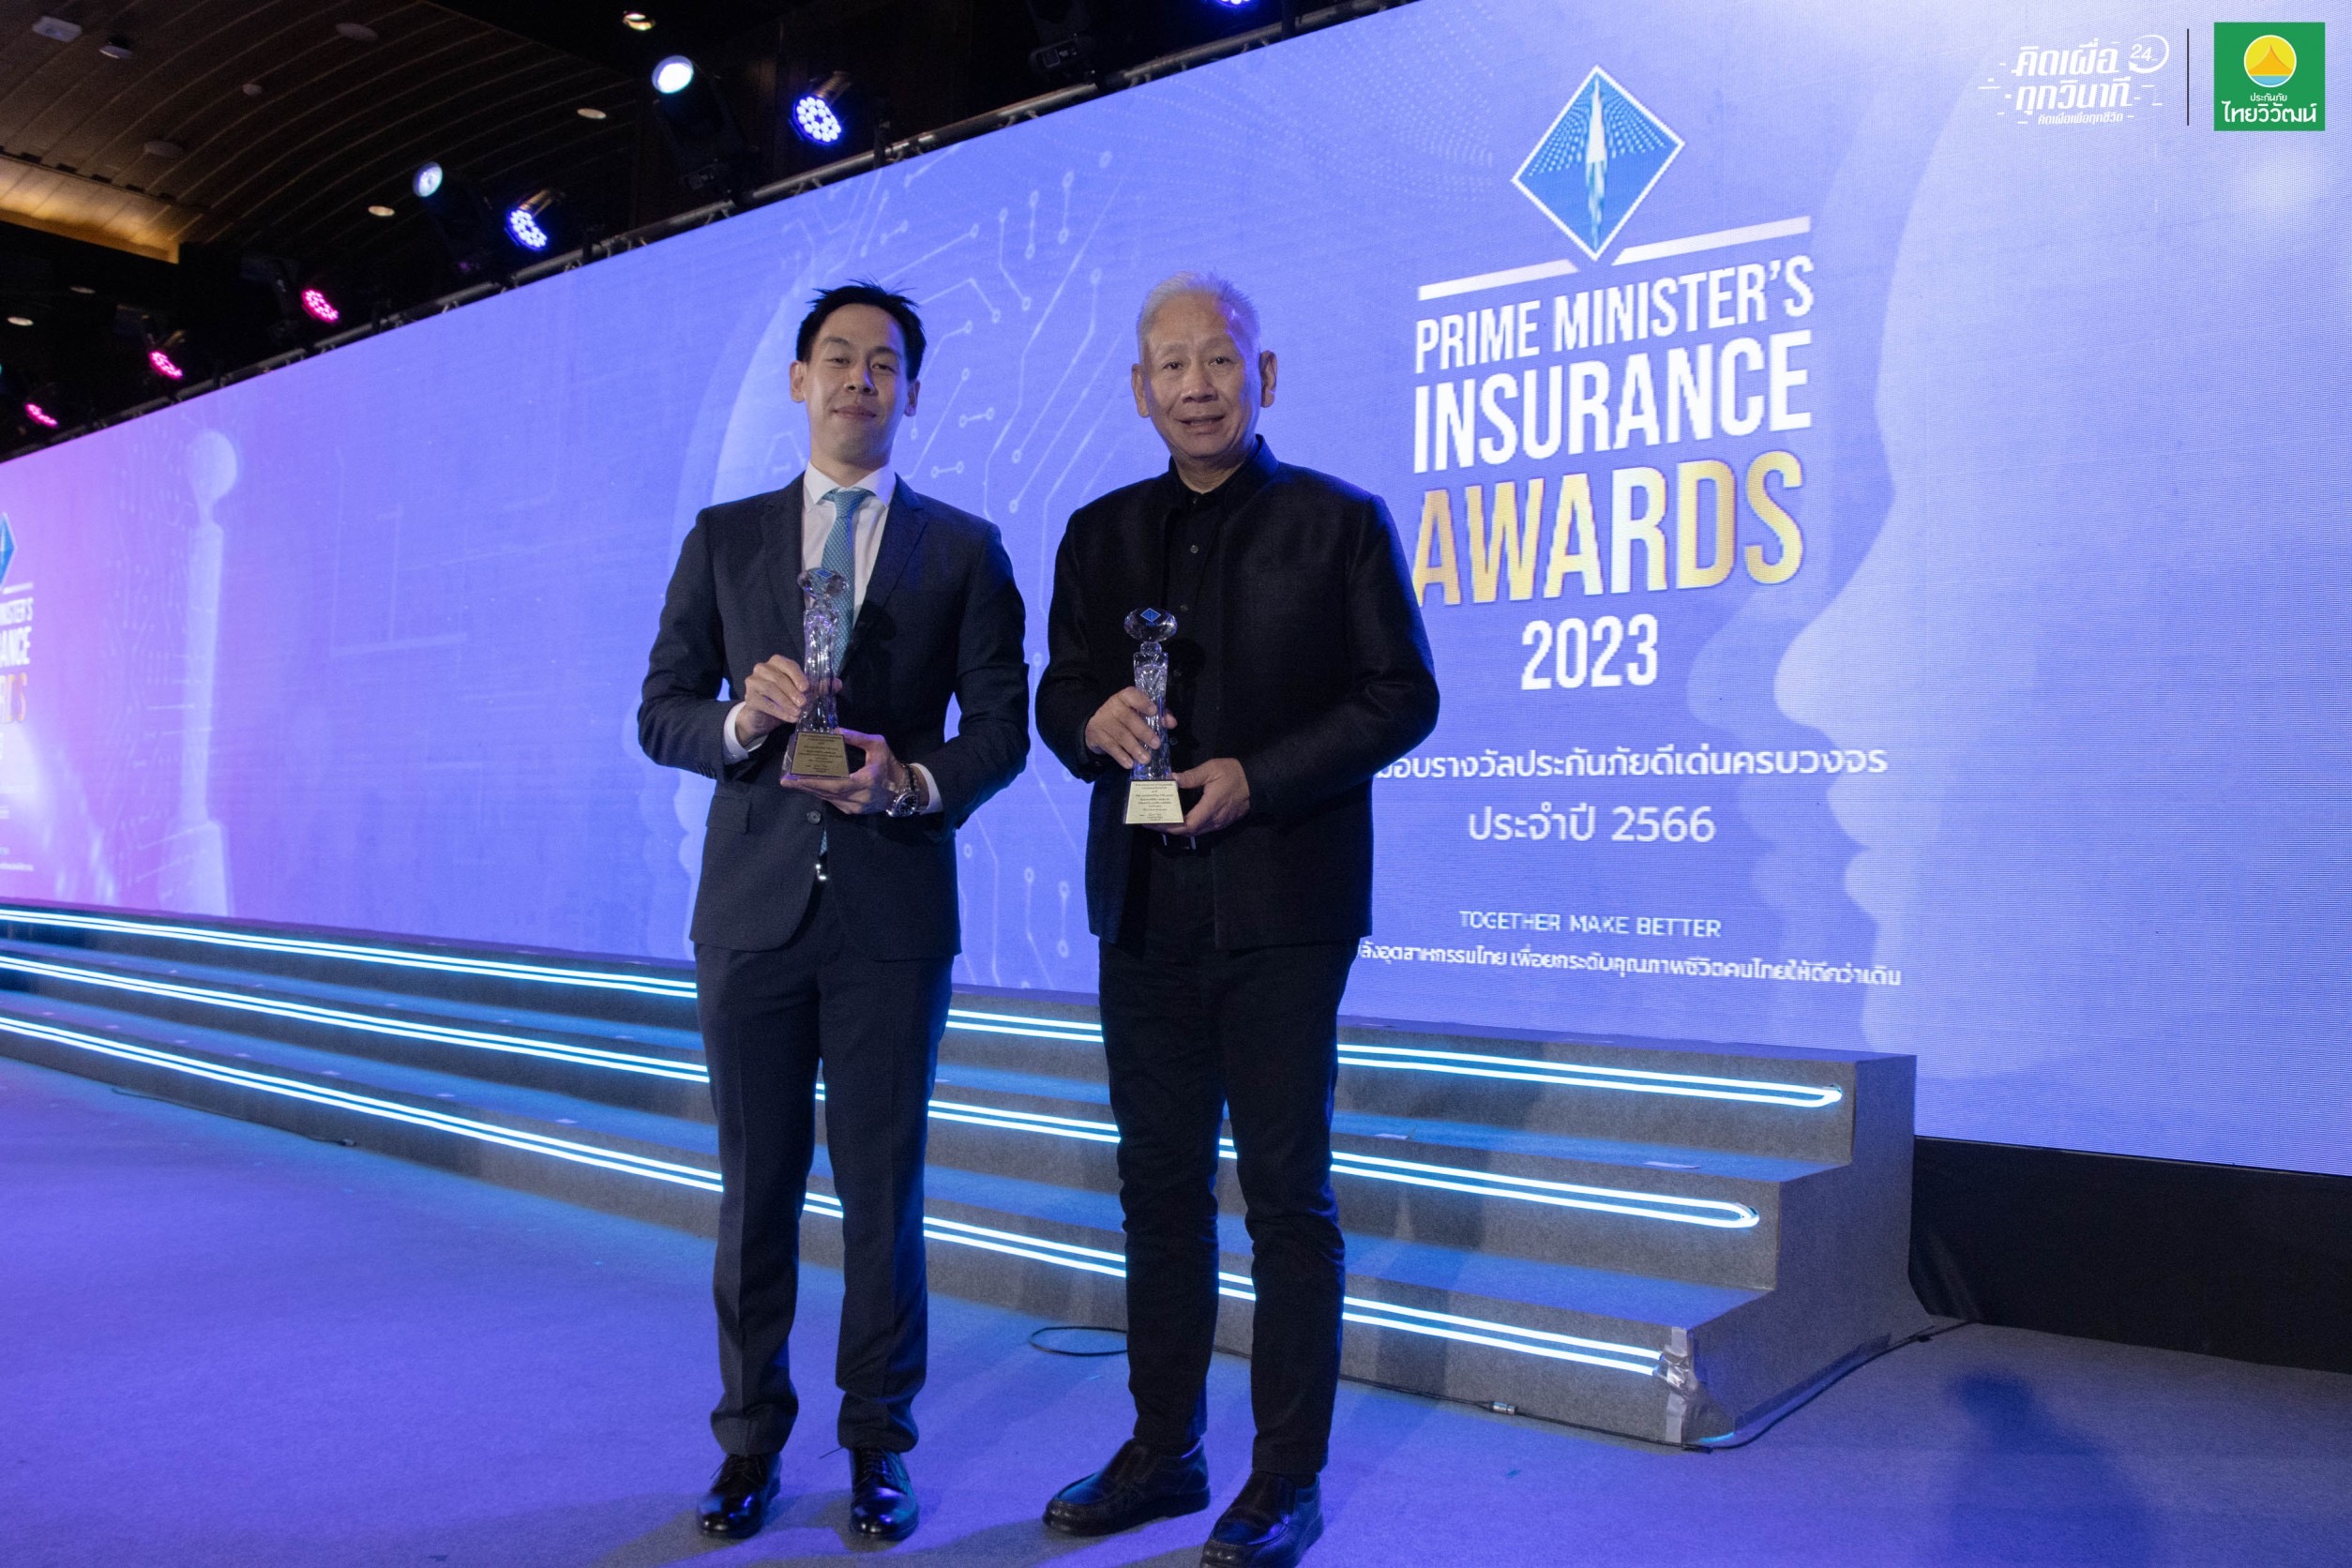 ประกันภัยไทยวิวัฒน์ คว้า 2 รางวัลเกียรติยศ  เวที Prime Minister’s Insurance Awards 2023